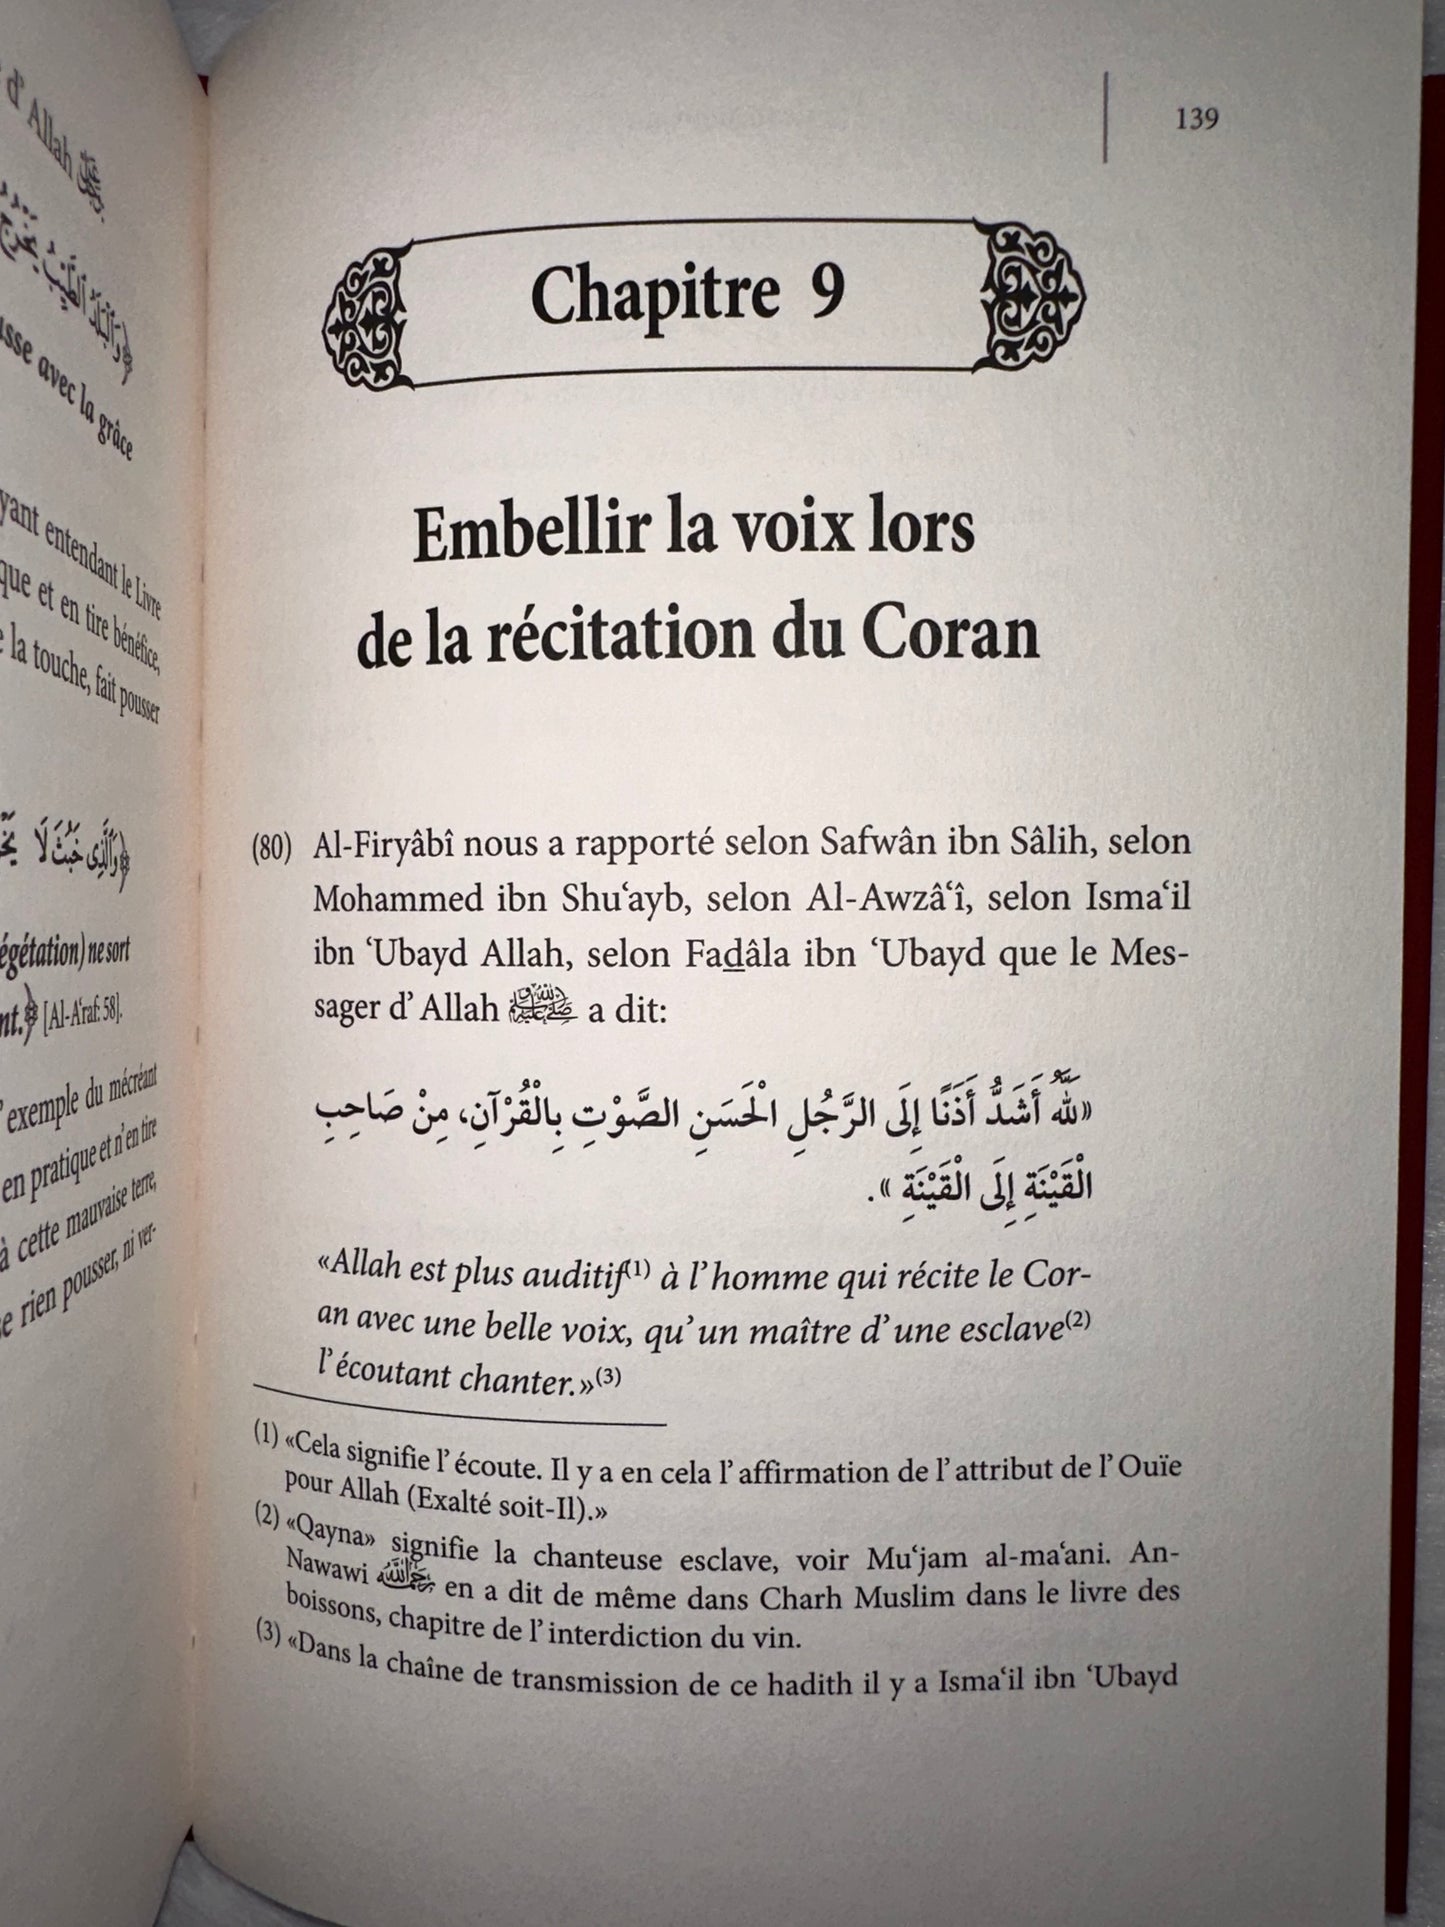 Commentaire Du Livre L'éthique Des Mémorisateurs Du Coran, De Abû Bakr Al-Âjurrî, Commenté Par Abd Ar-Razzaq Al-BADR